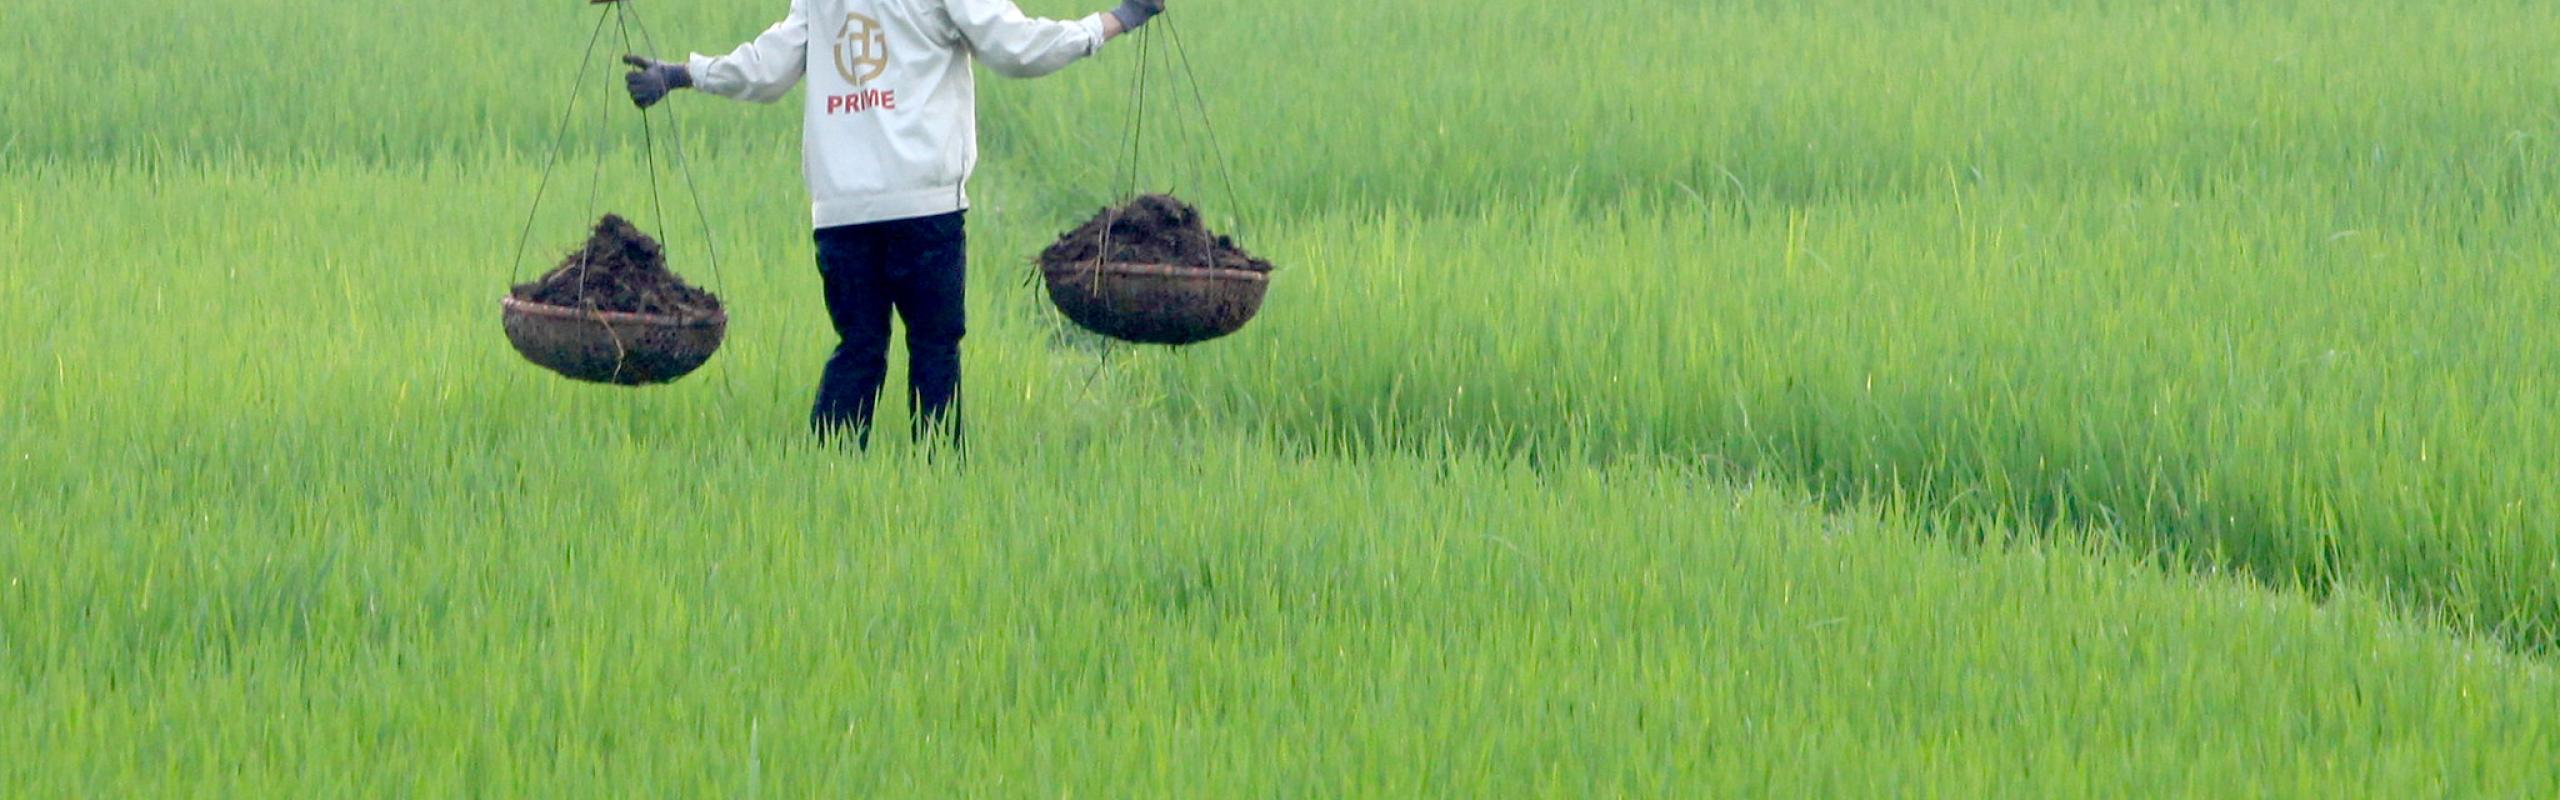 A farming woman spreads fertilizer in a paddy field. 